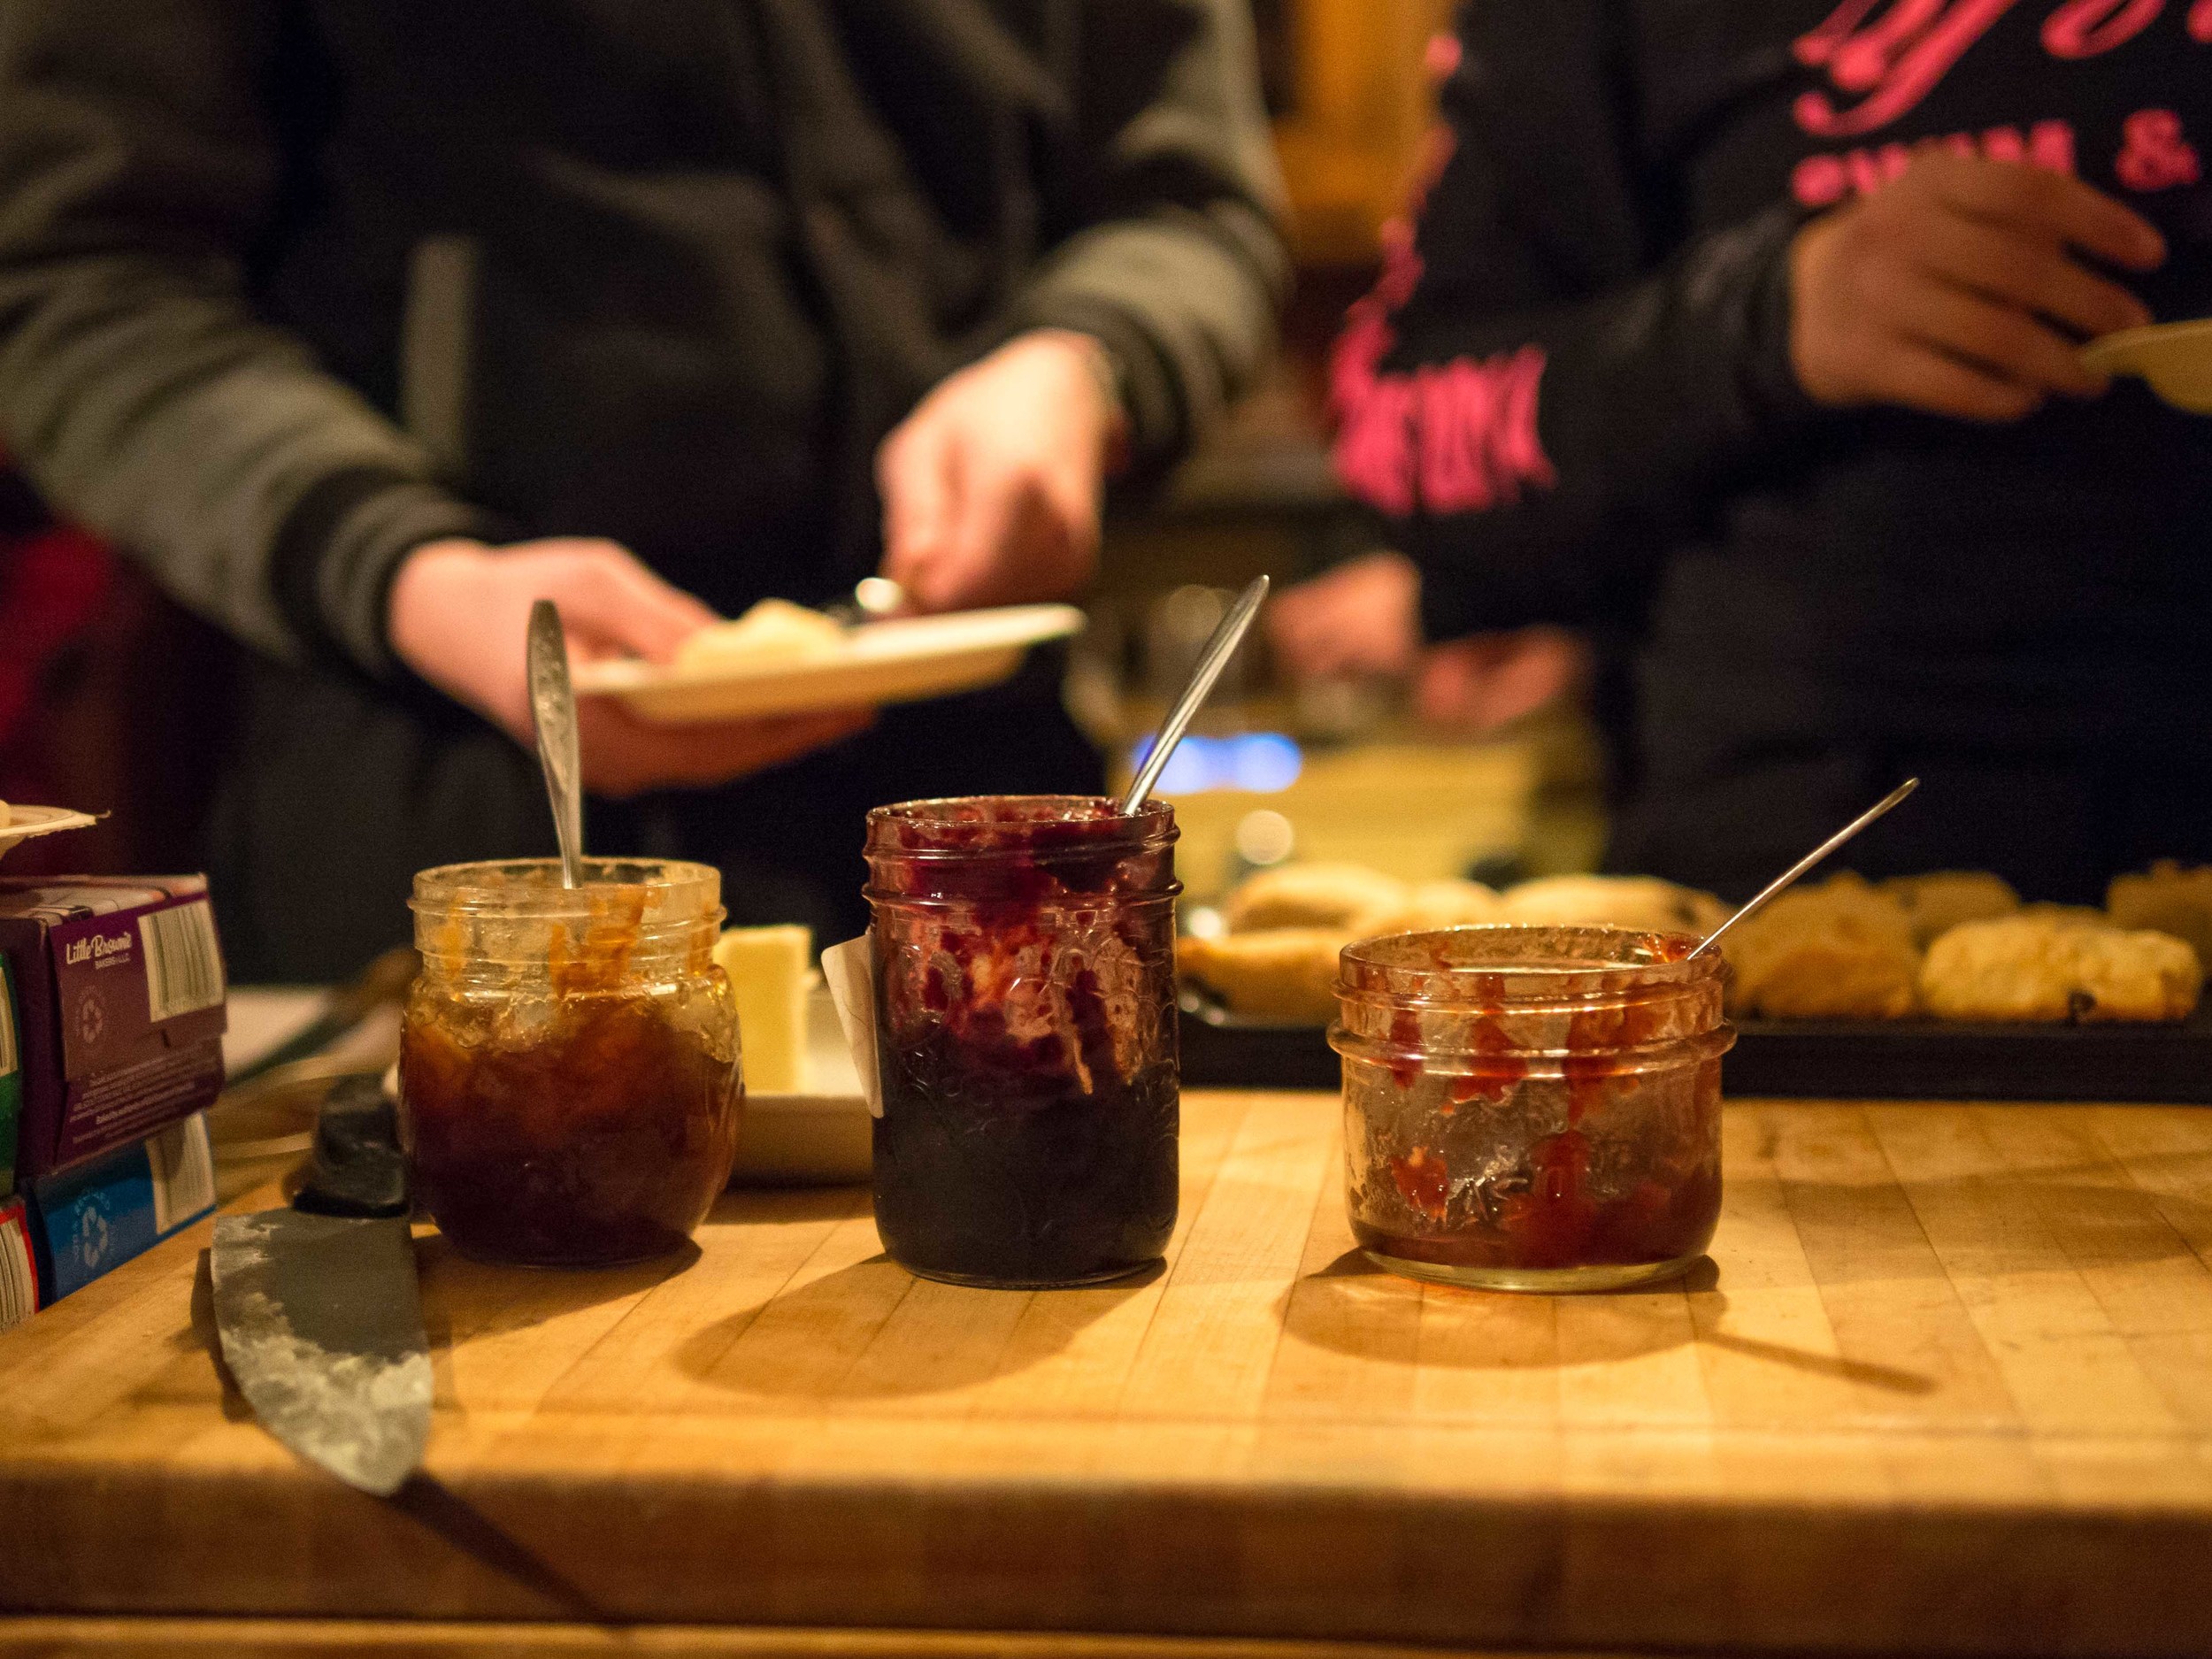 Homemade jams and fresh bannock. Photo by Anubha Momin.